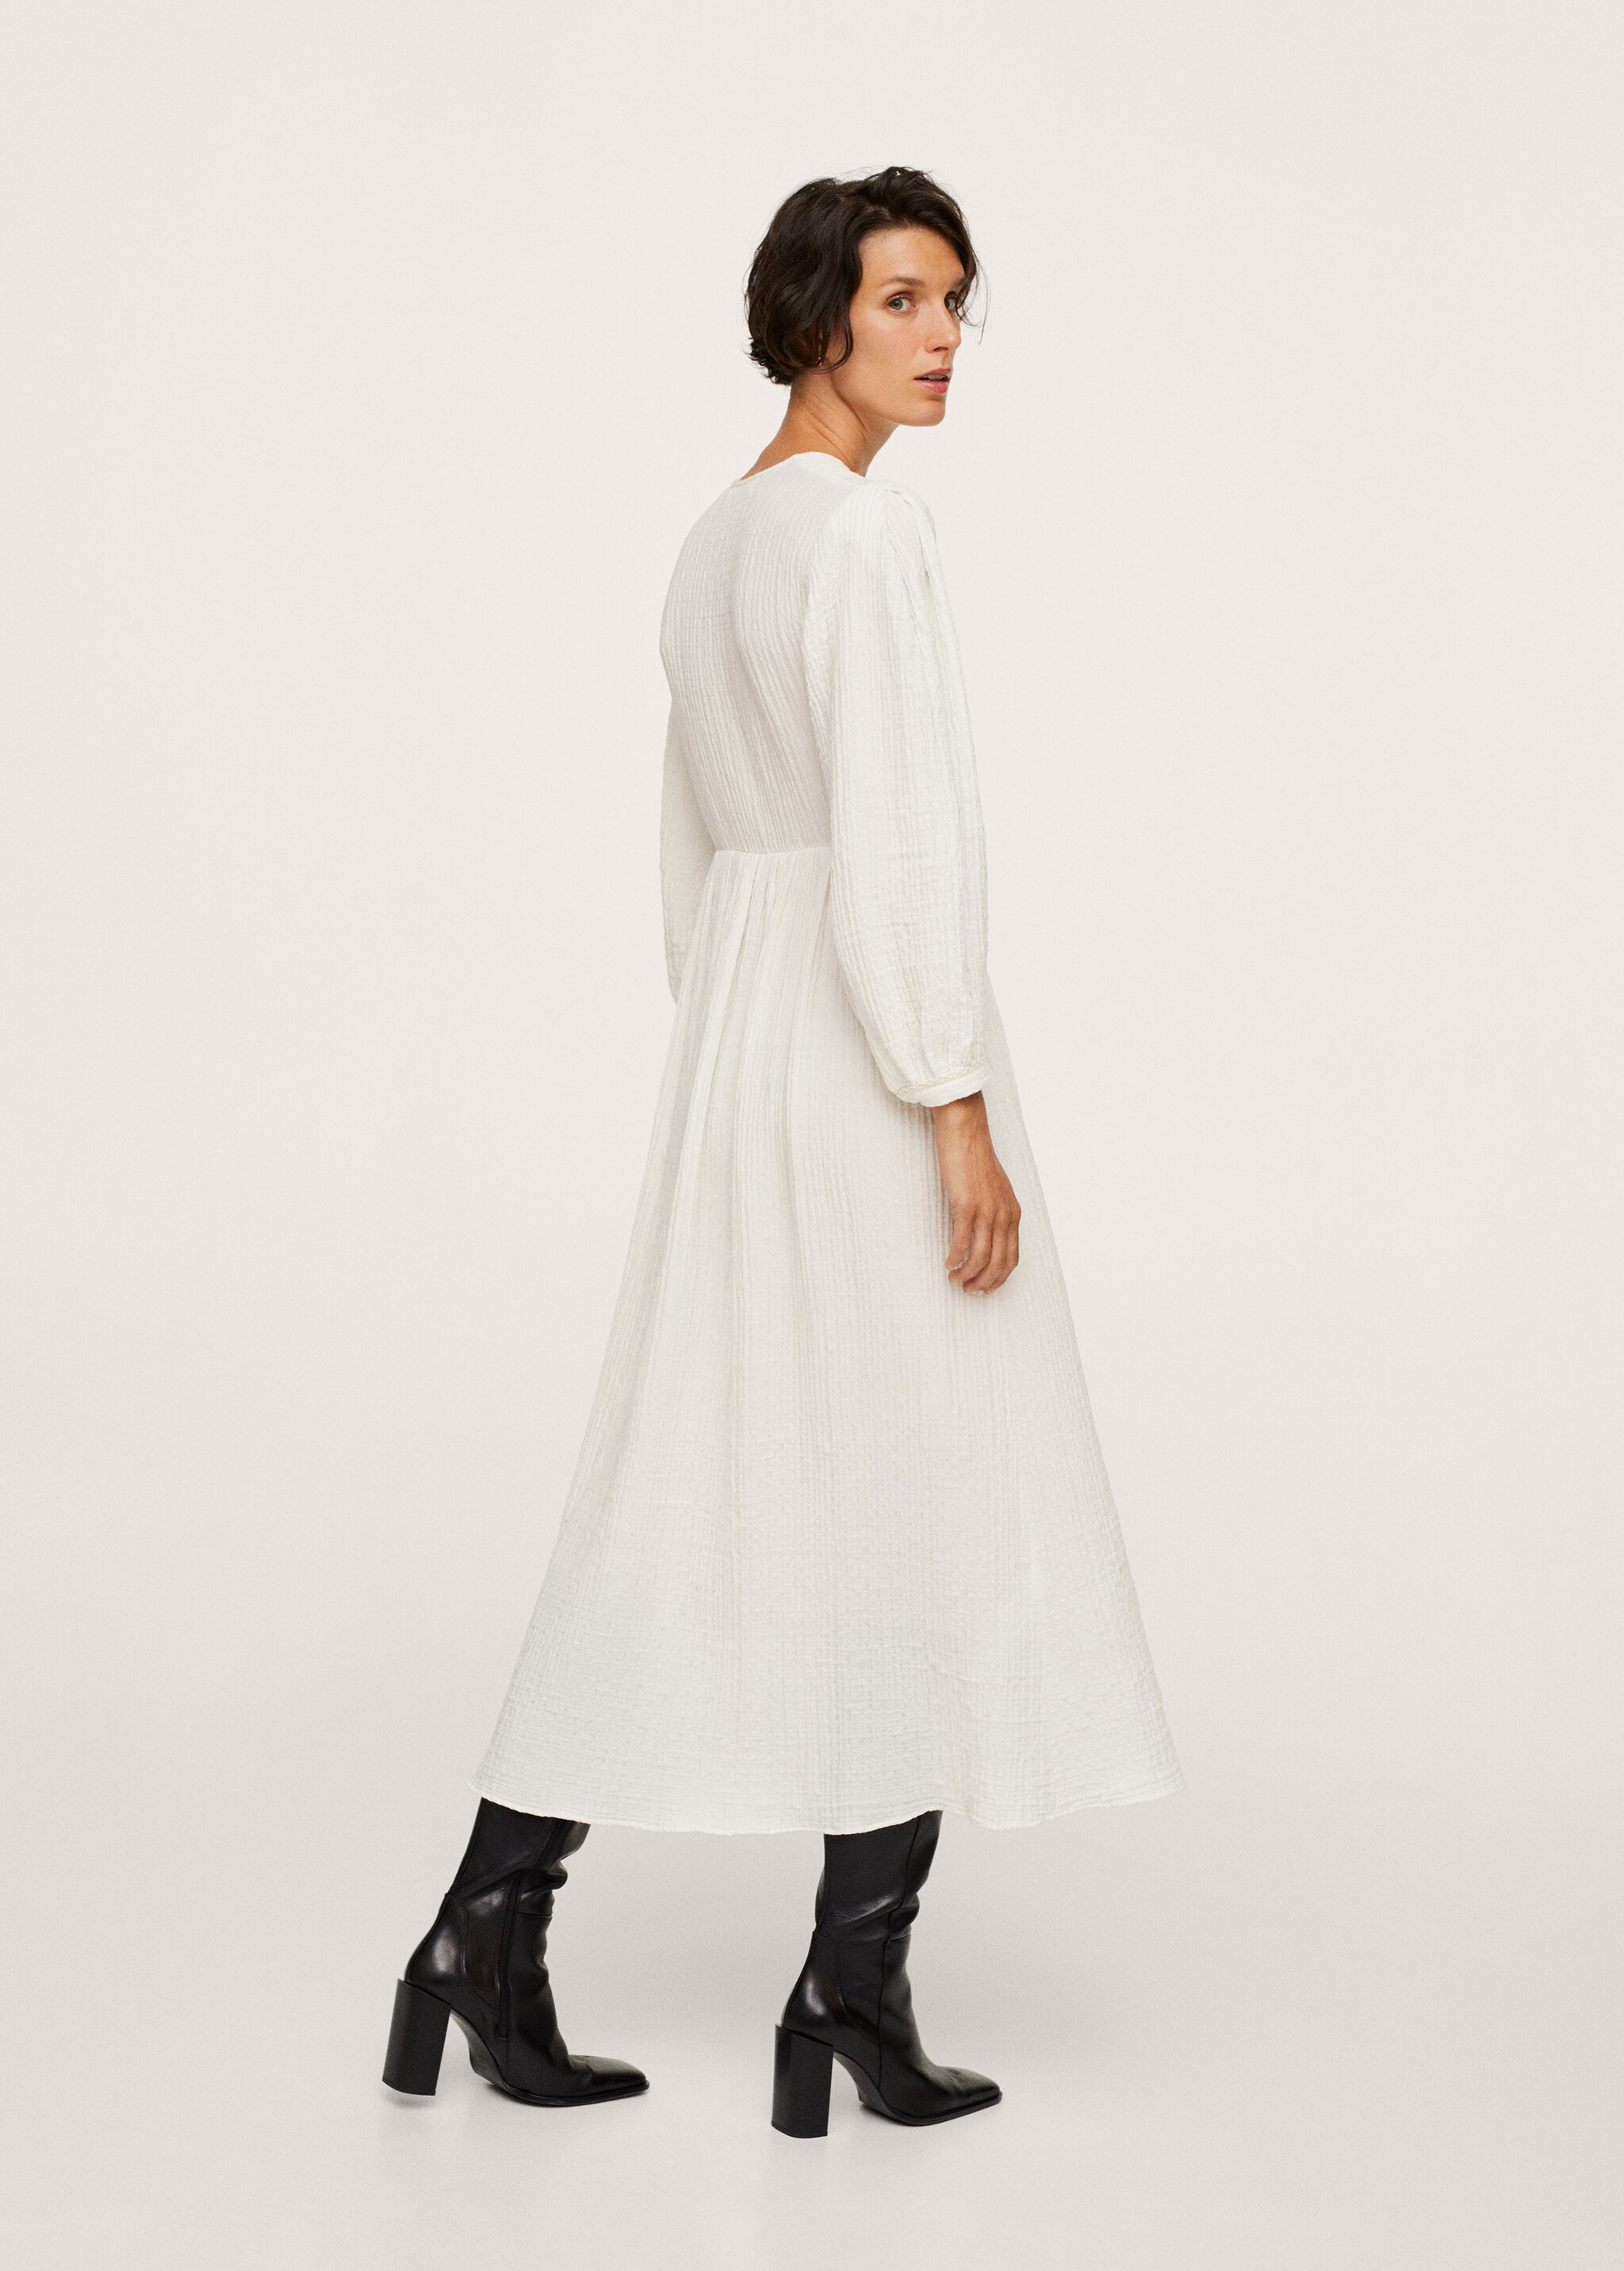 Φόρεμα ανάγλυφο βαμβακερό - Πίσω όψη προϊόντος